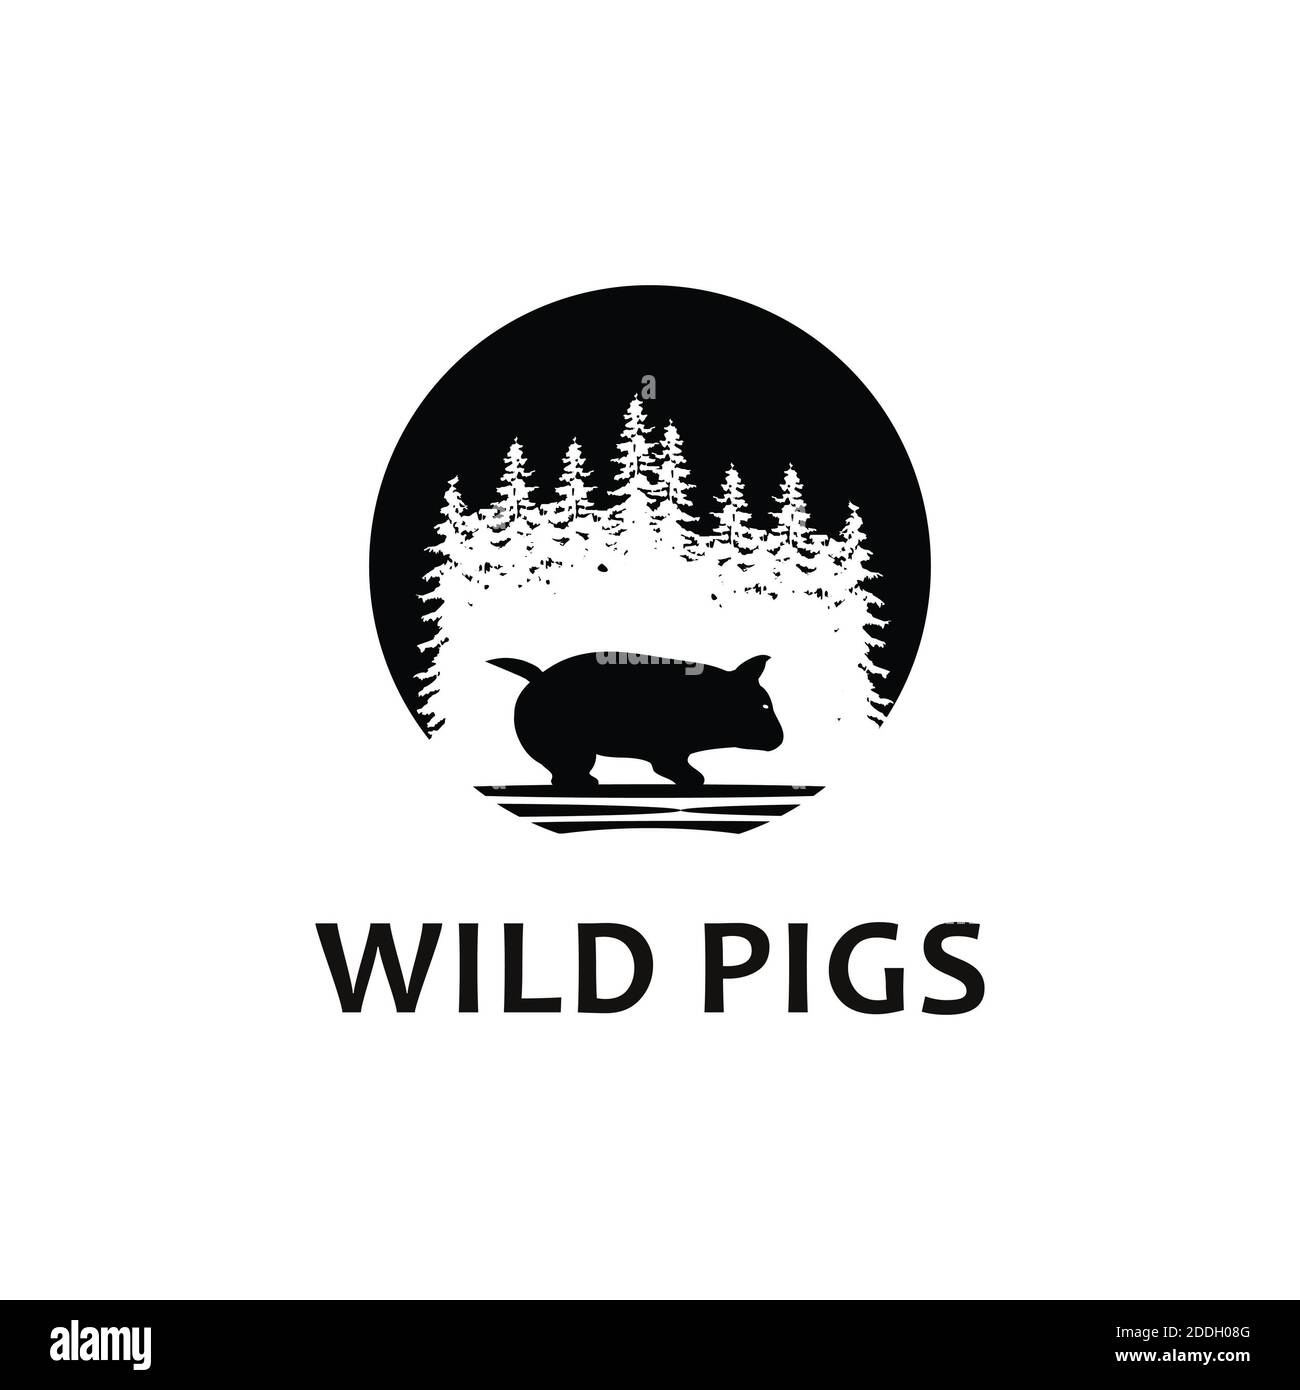 wild pig logo icon silhouette Stock Photo